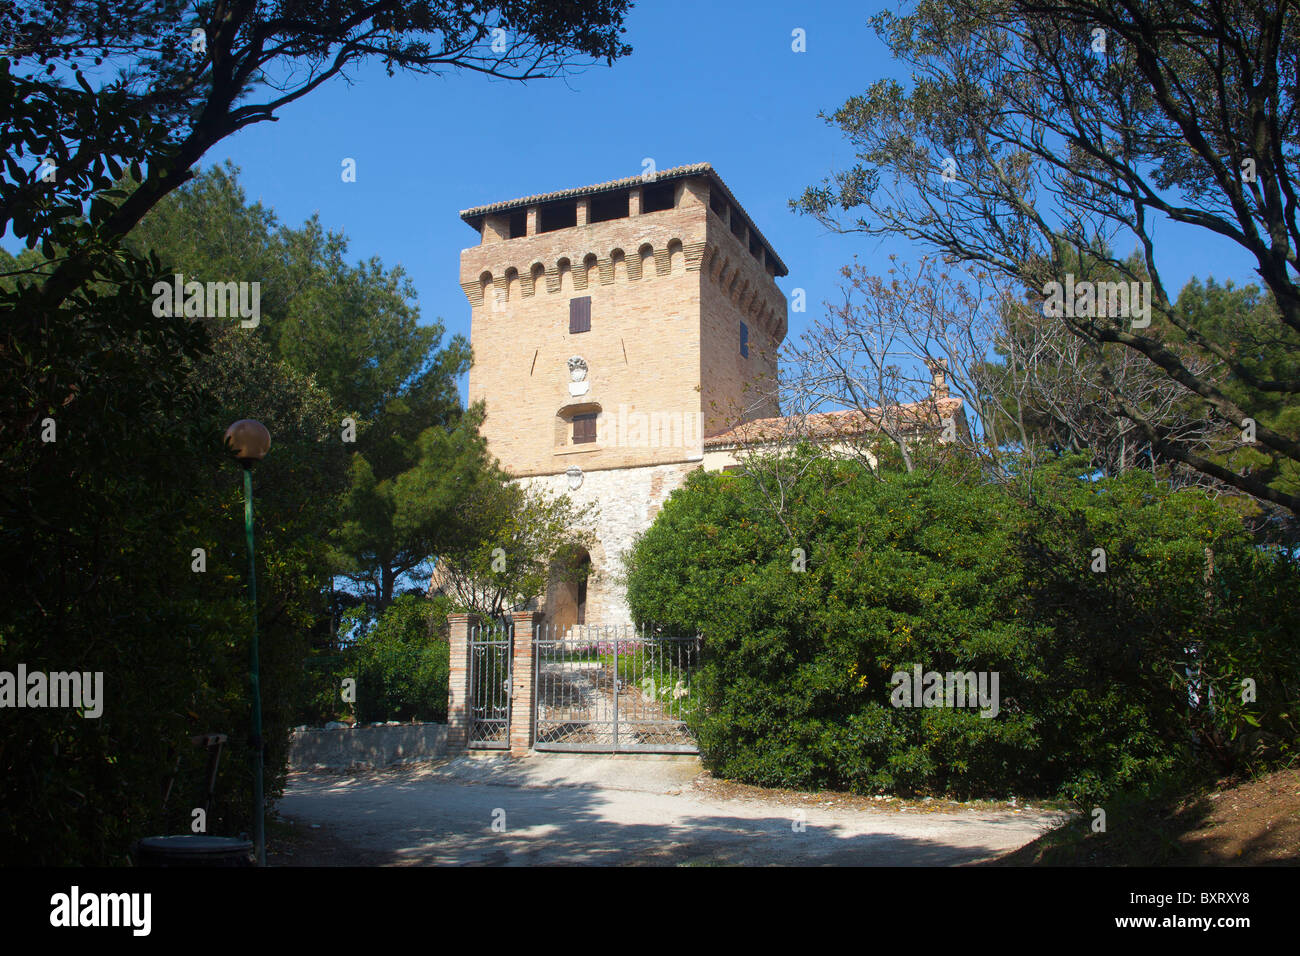 Turm, Portonovo Bay, Parco Regionale del Conero, Marche, Italien Stockfoto